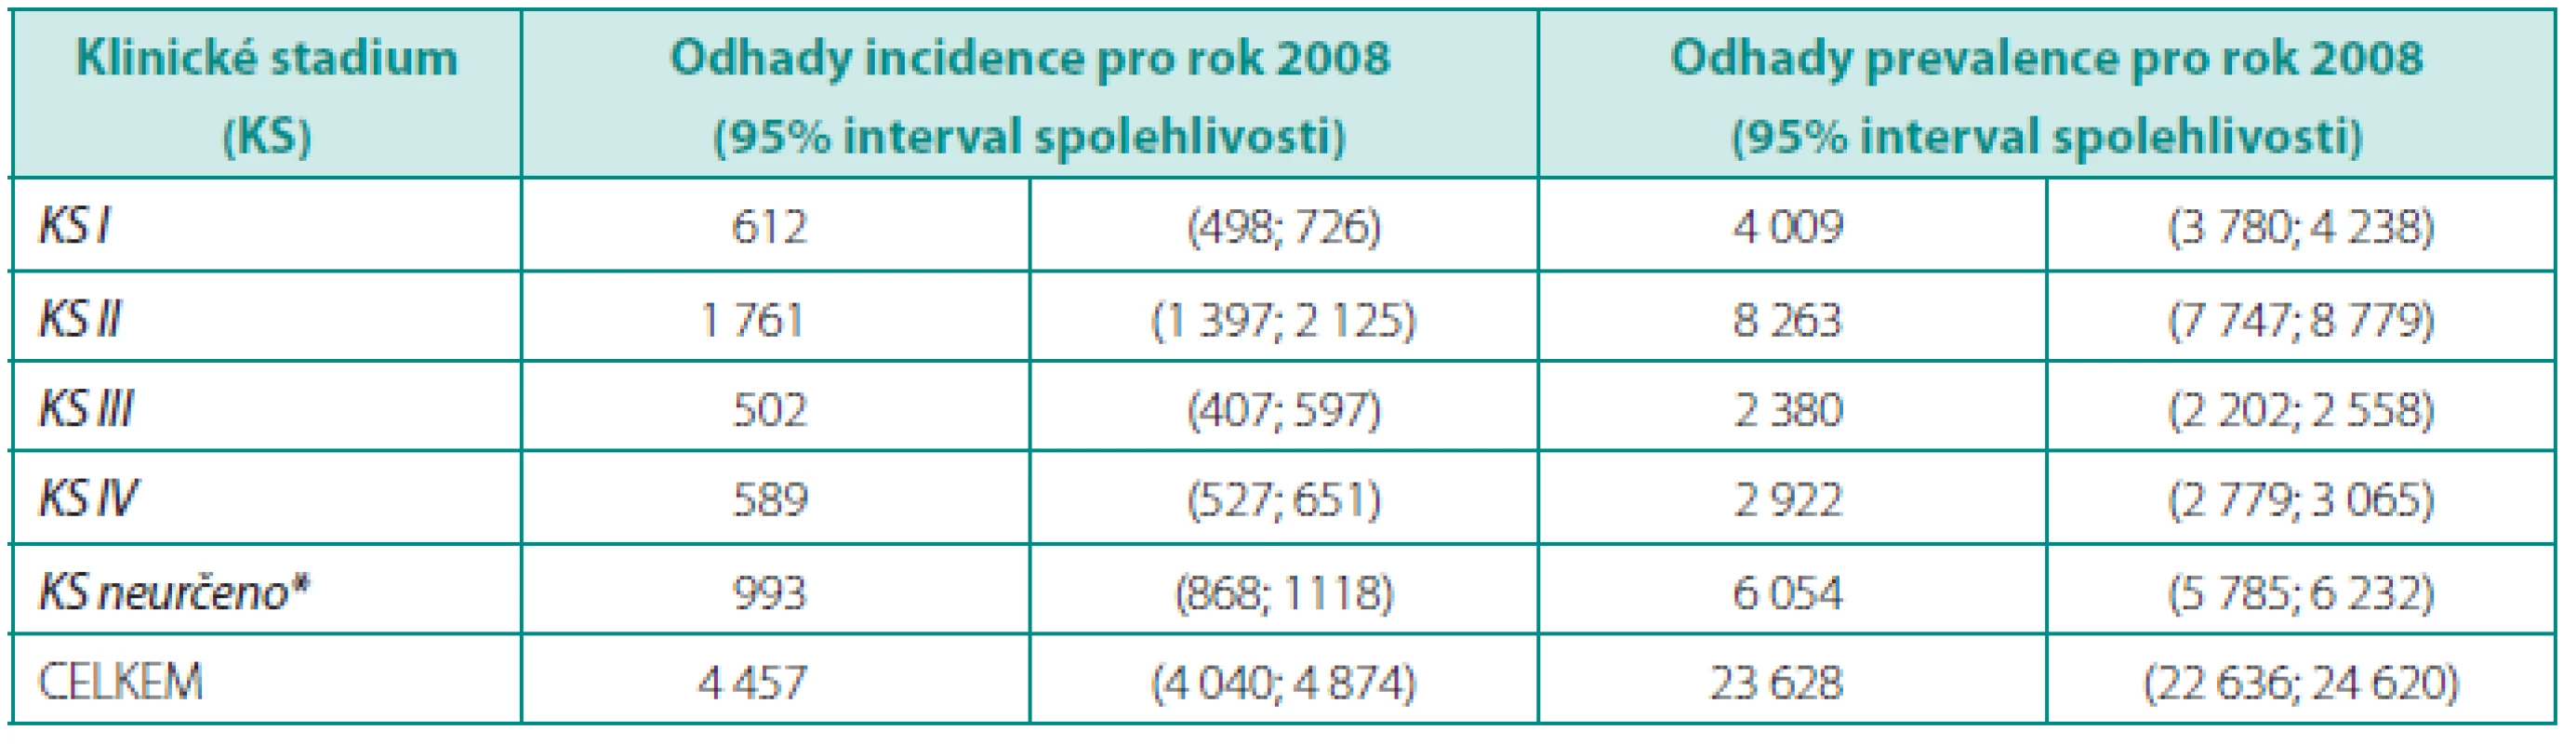 Výsledky prospektivního modelování incidence a prevalence pro karcinom prostaty v české populaci
Table 1. Results of prospective estimate of prostate cancer incidence and prevalence in Czech population